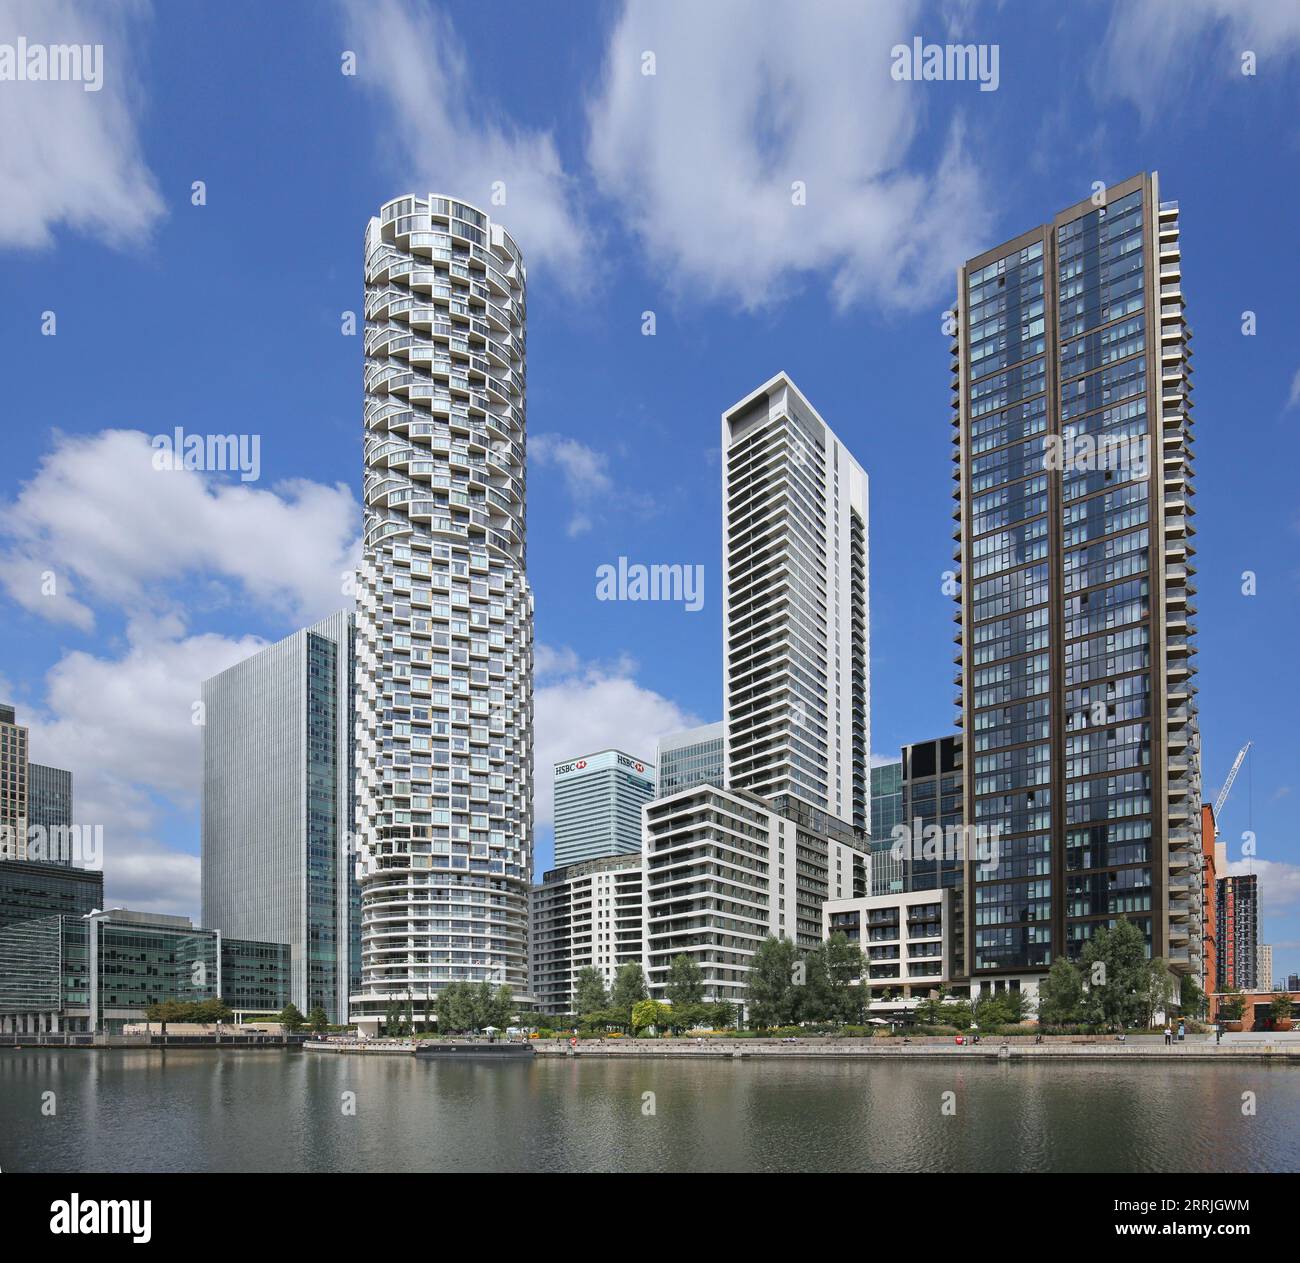 One Park Drive (Mitte links), der neue, kreisförmige Wohnturm in Canary Wharf, London, UK von Herzog de Meuron Architekten Stockfoto